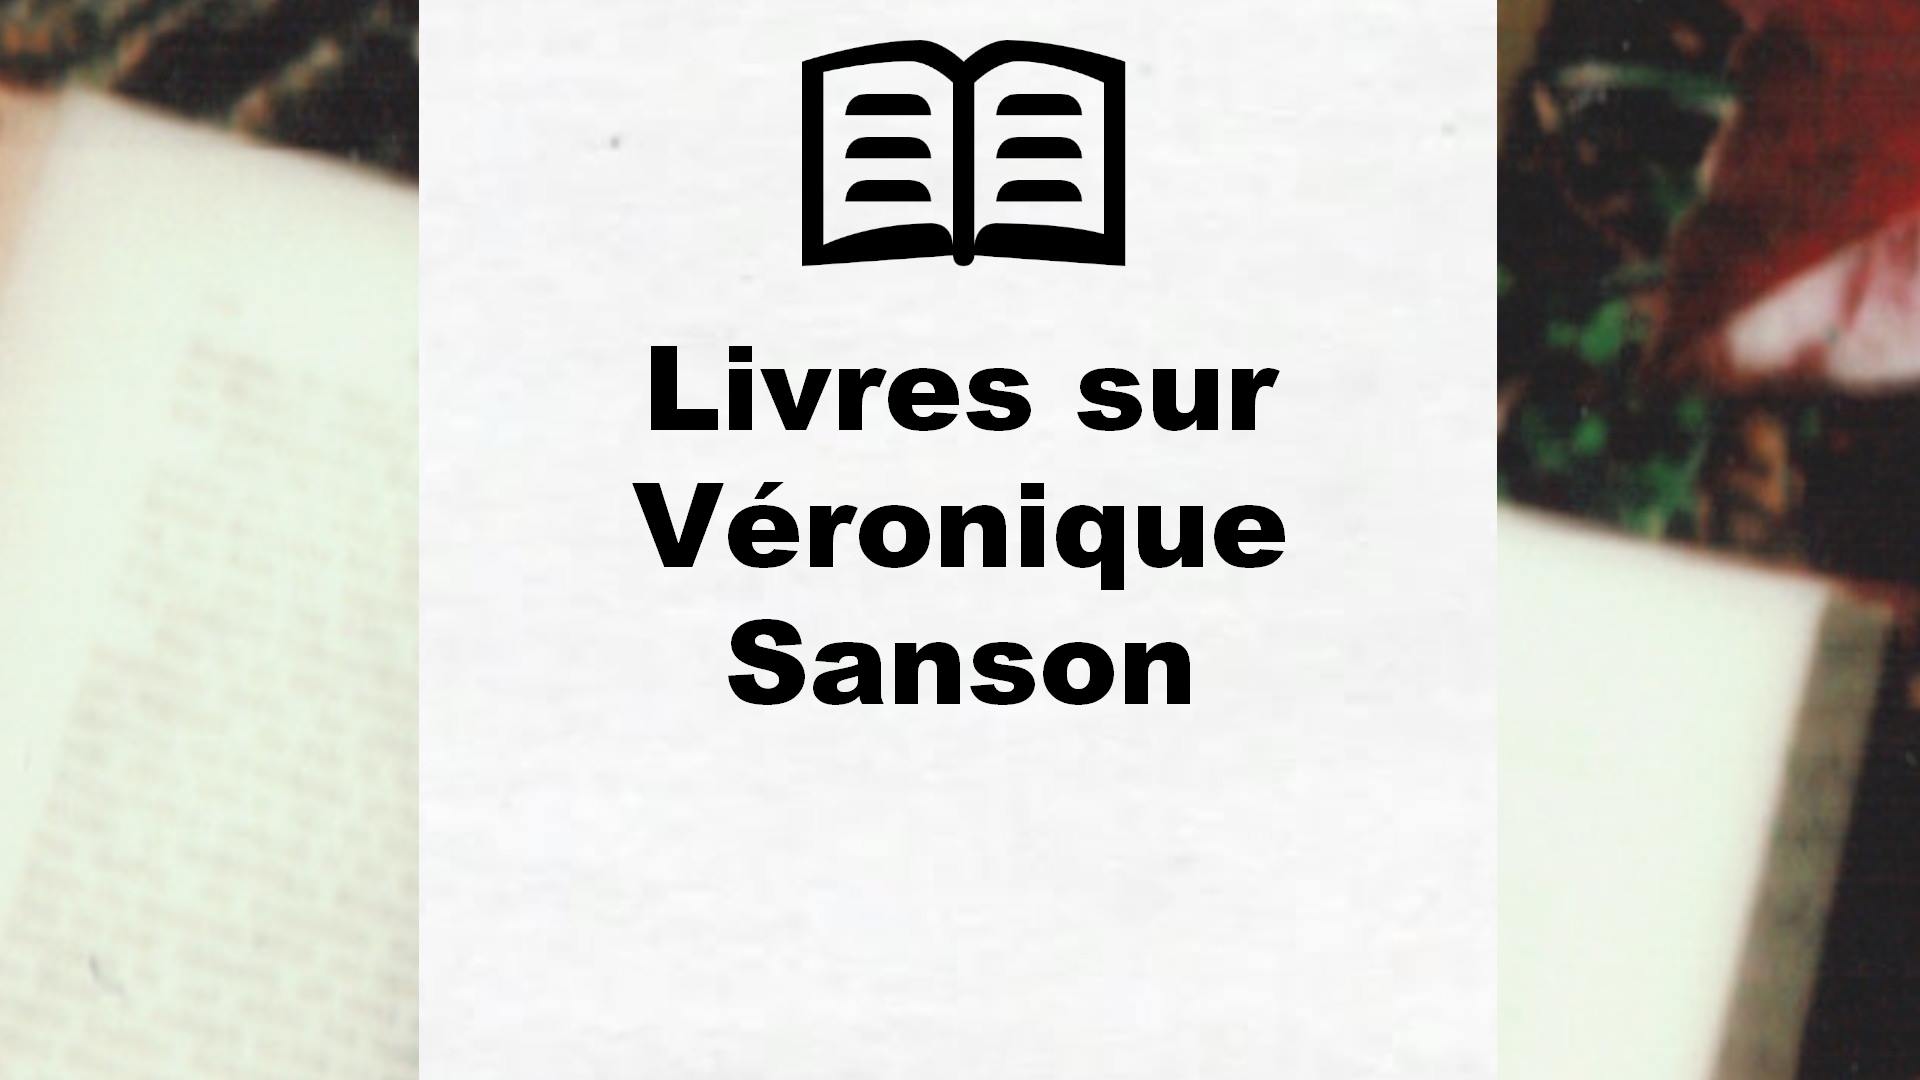 Livres sur Véronique Sanson